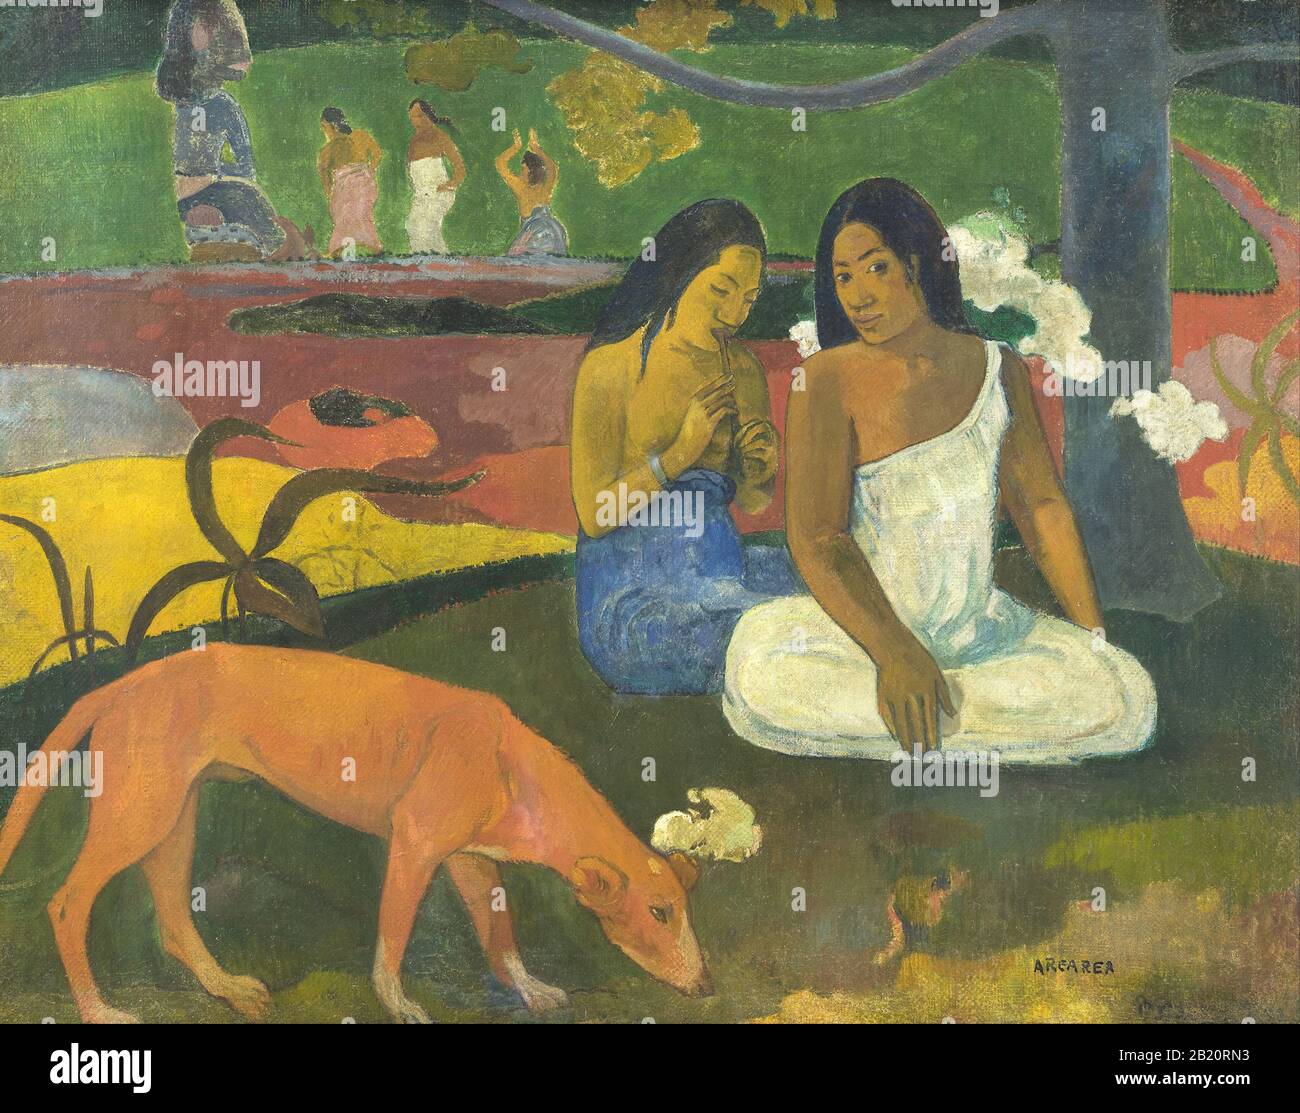 Joyfulness (Arearea) (1892) 19ème siècle Peinture de Paul Gauguin - Très haute résolution et image de qualité Banque D'Images